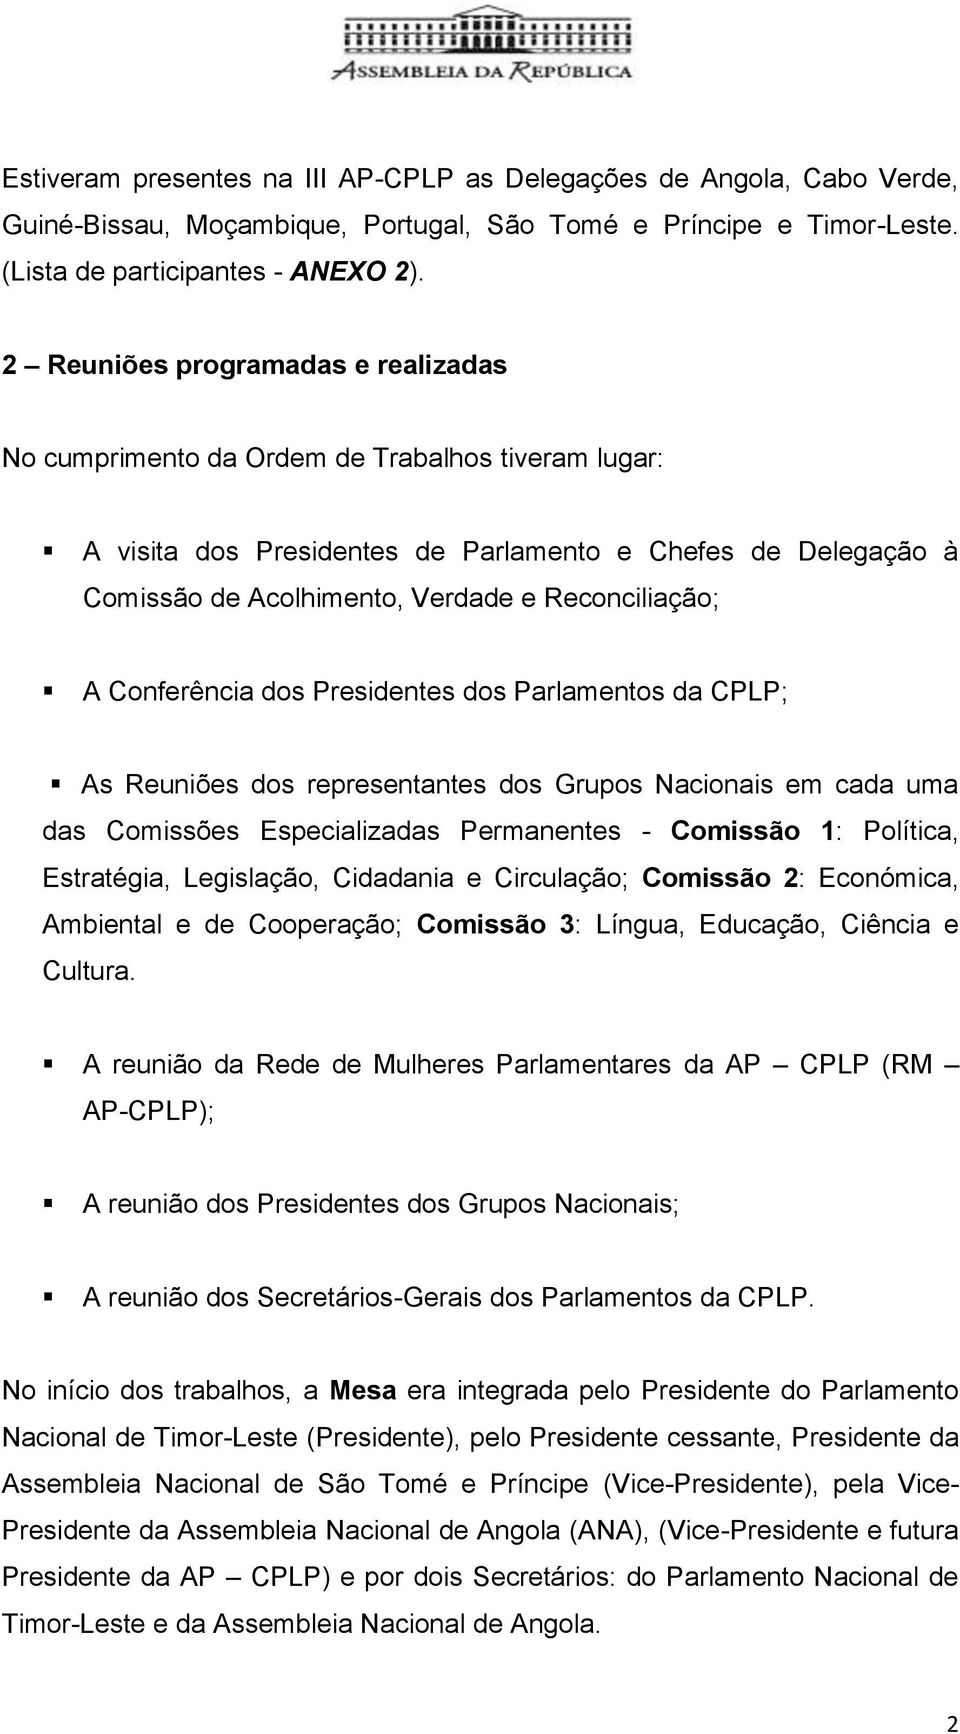 Reconciliação; A Conferência dos Presidentes dos Parlamentos da CPLP; As Reuniões dos representantes dos Grupos Nacionais em cada uma das Comissões Especializadas Permanentes - Comissão 1: Política,